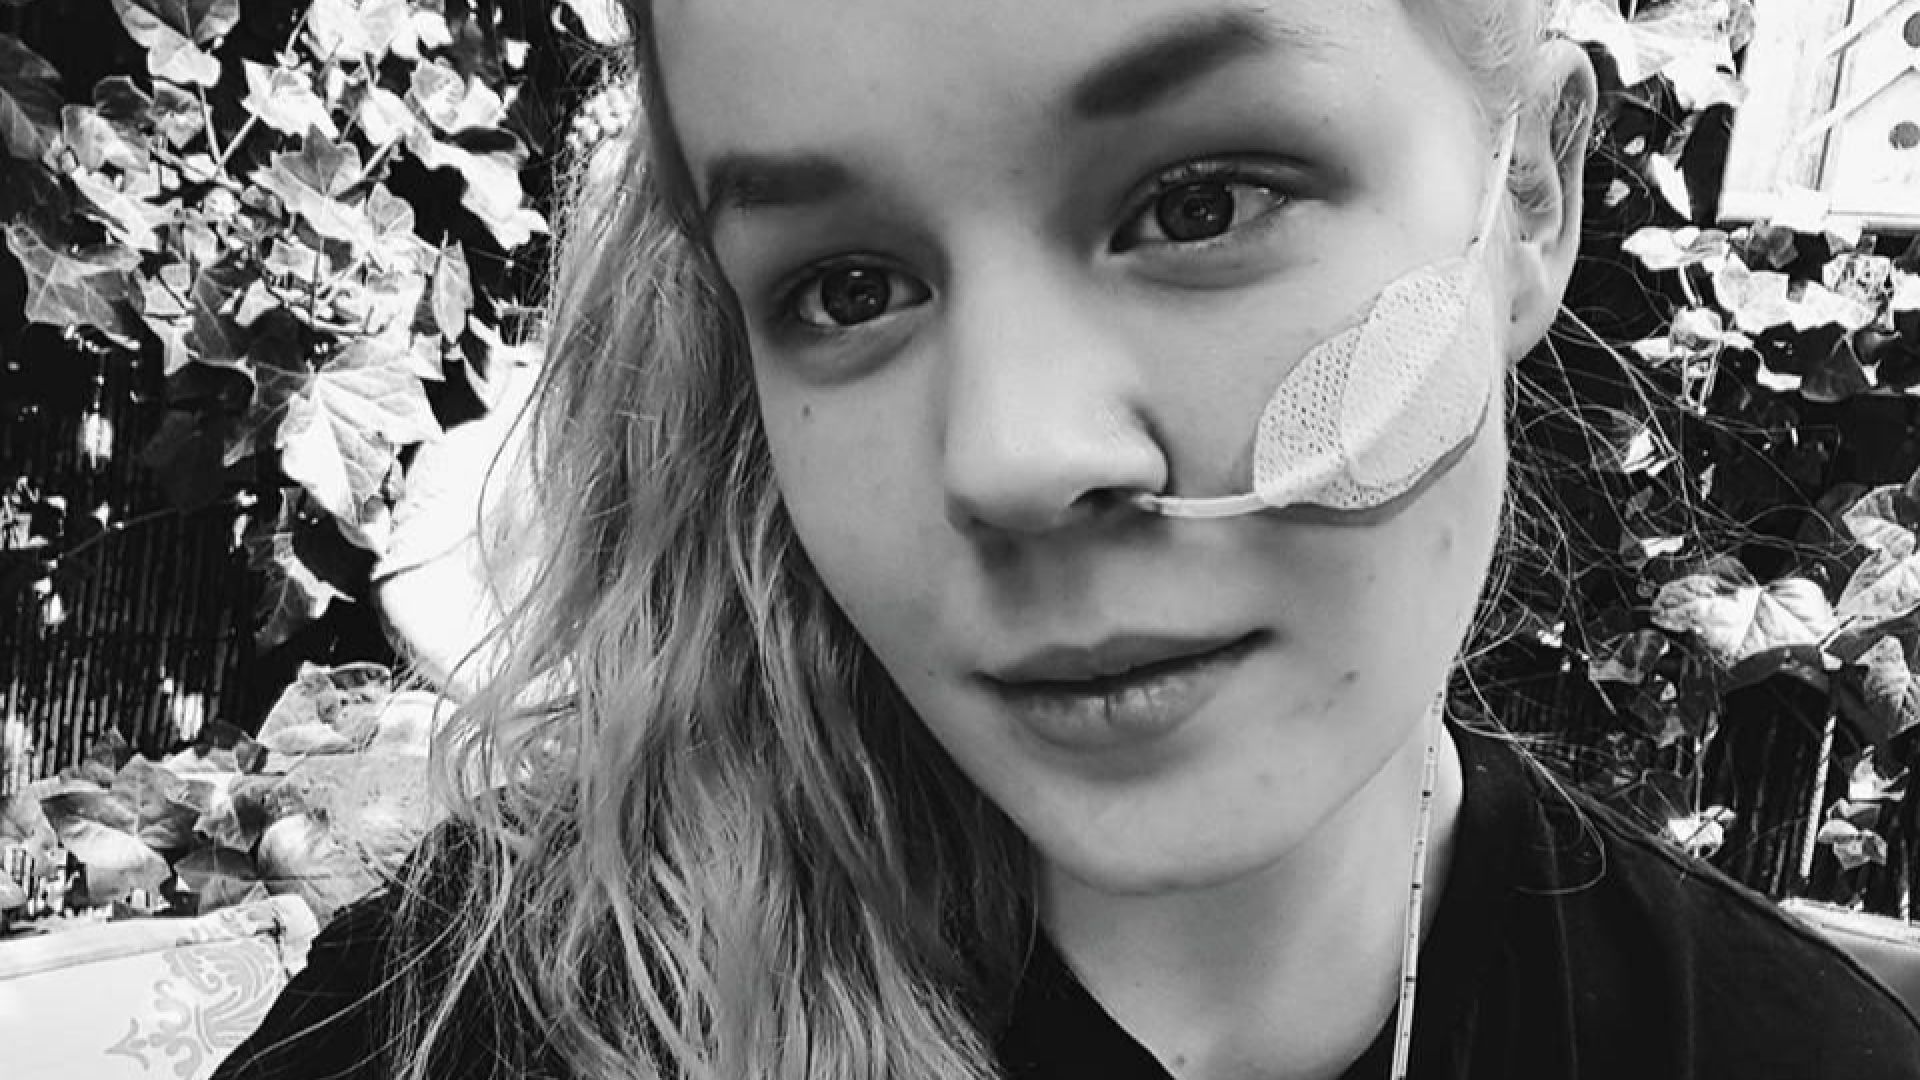 17-годишна холандка, страдала от анорексия и депресия след насилие, избра евтаназията